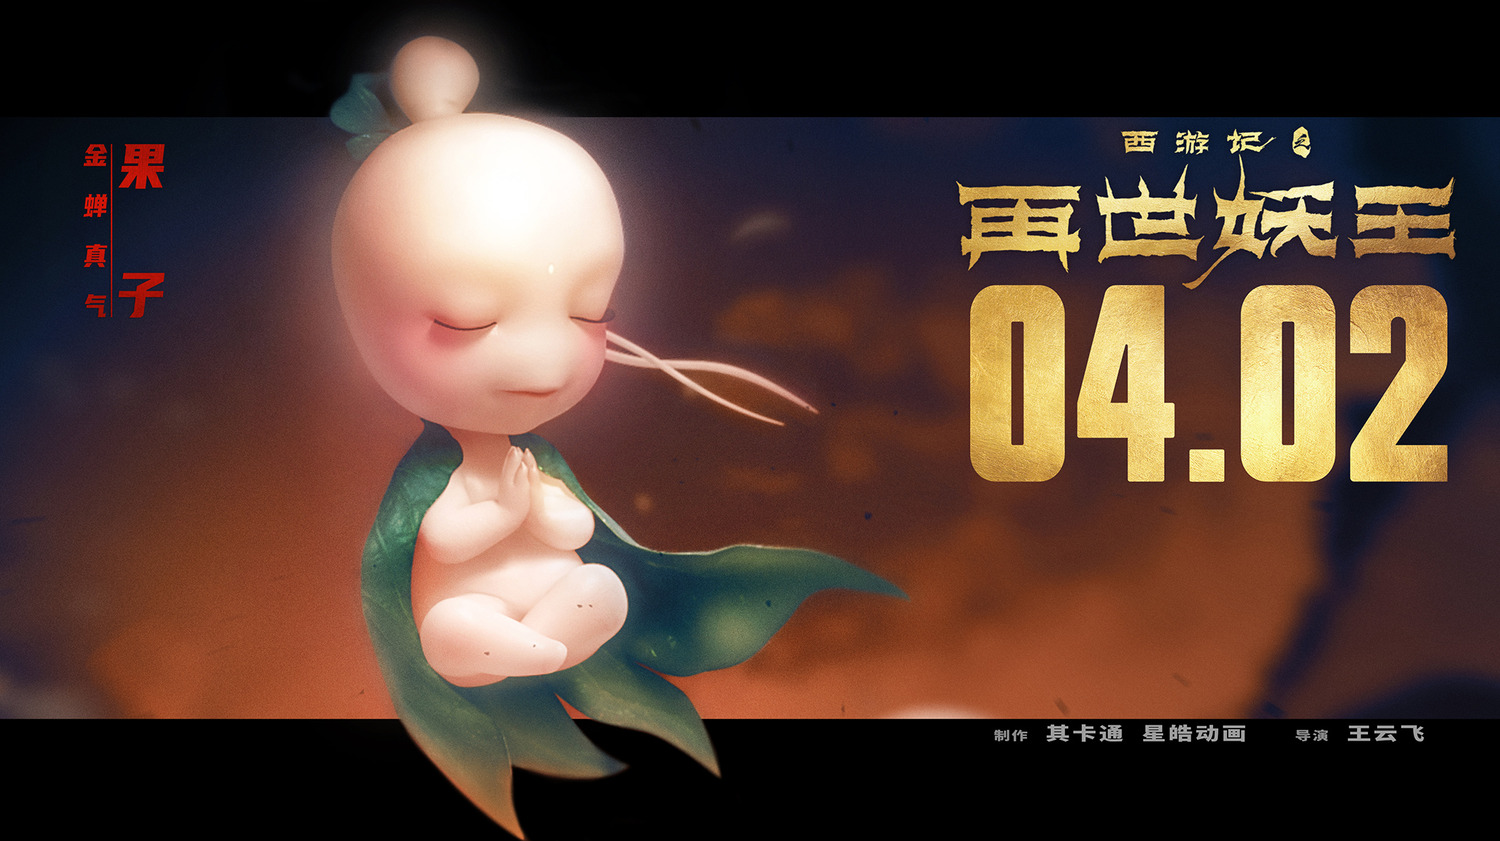 Extra Large Movie Poster Image for Xi You Ji Zhi Zai Shi Yao Wang (#3 of 21)